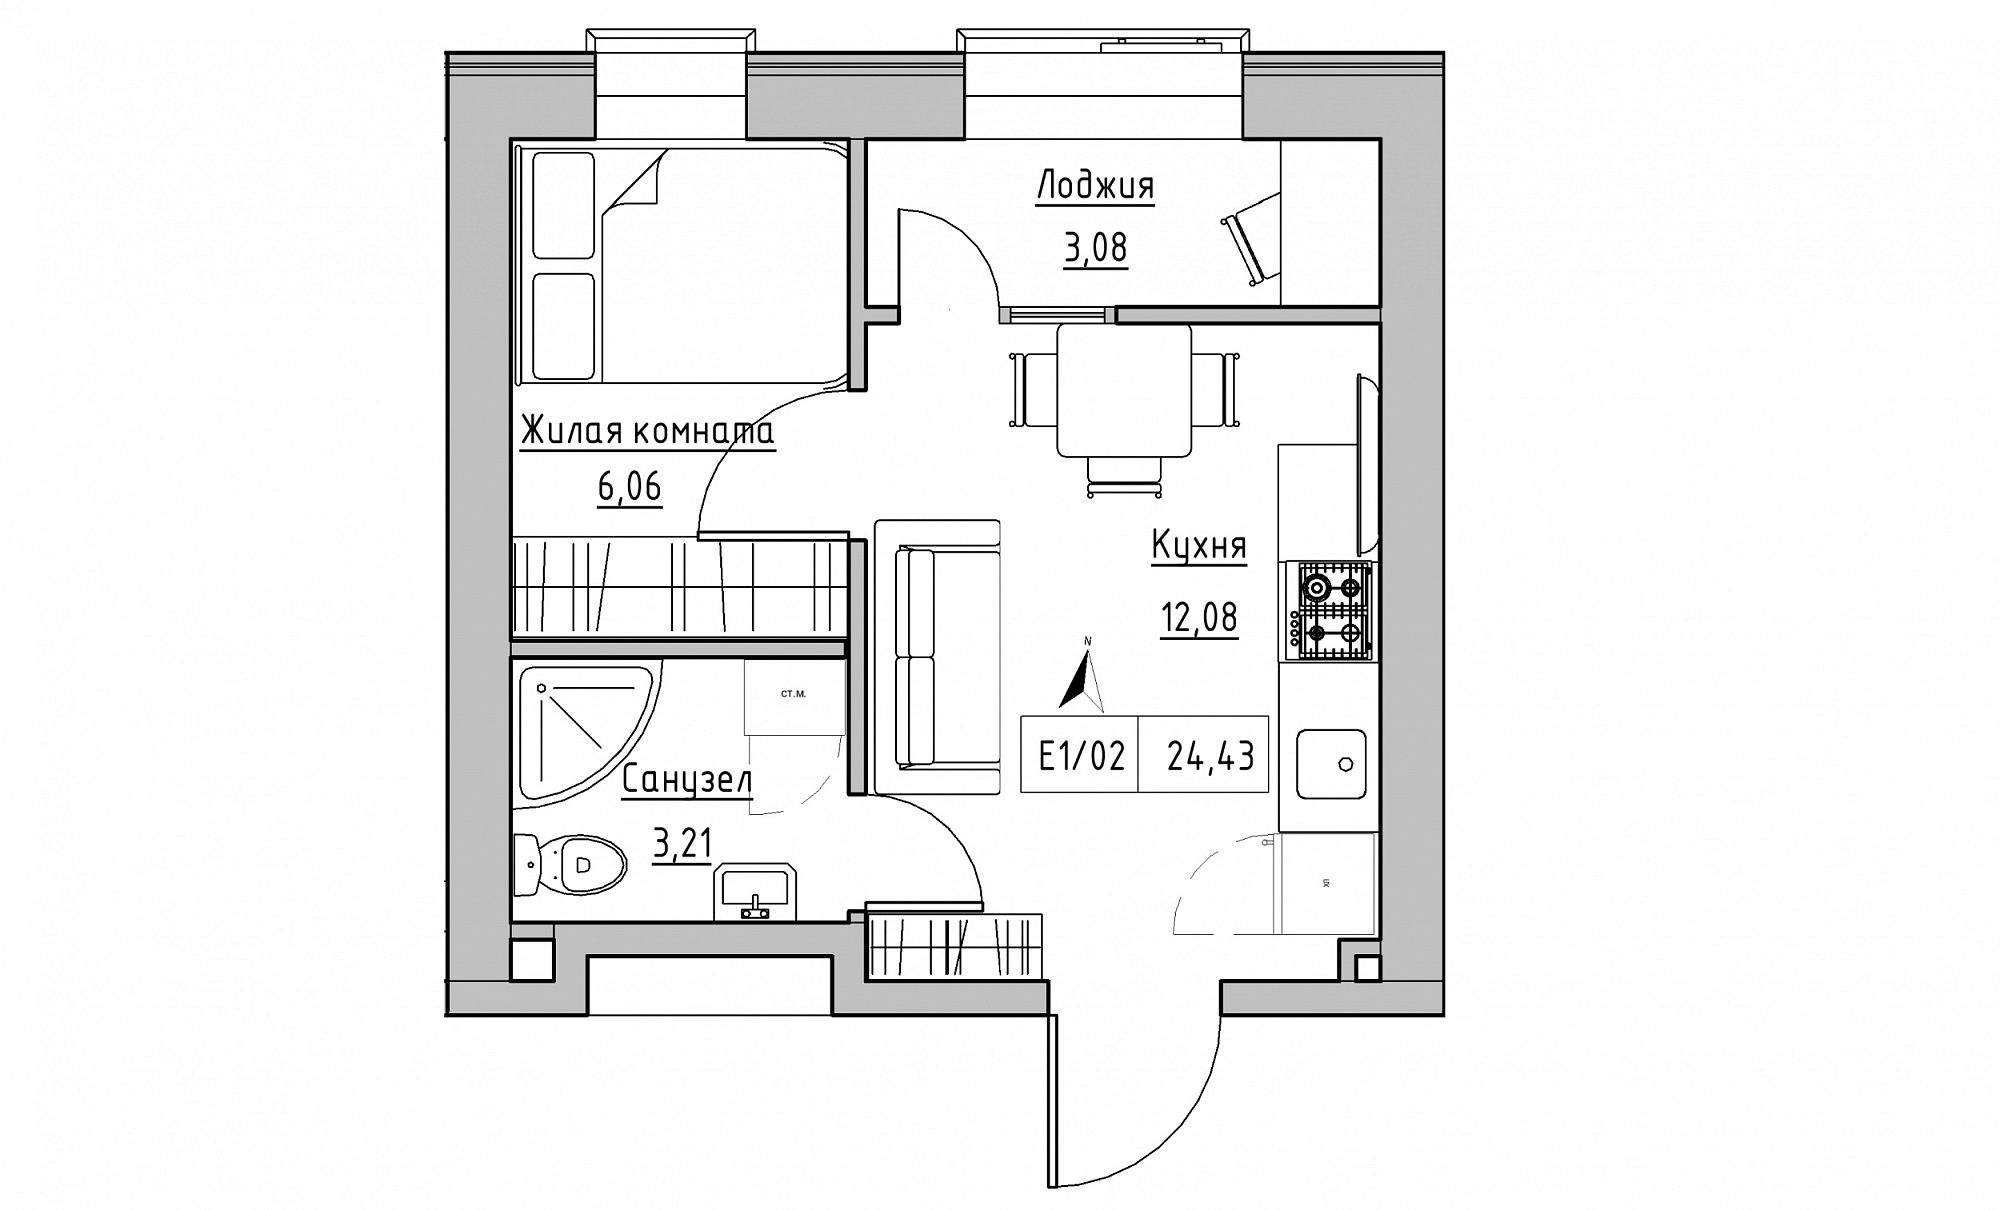 Планировка 1-к квартира площей 24.43м2, KS-015-02/0014.